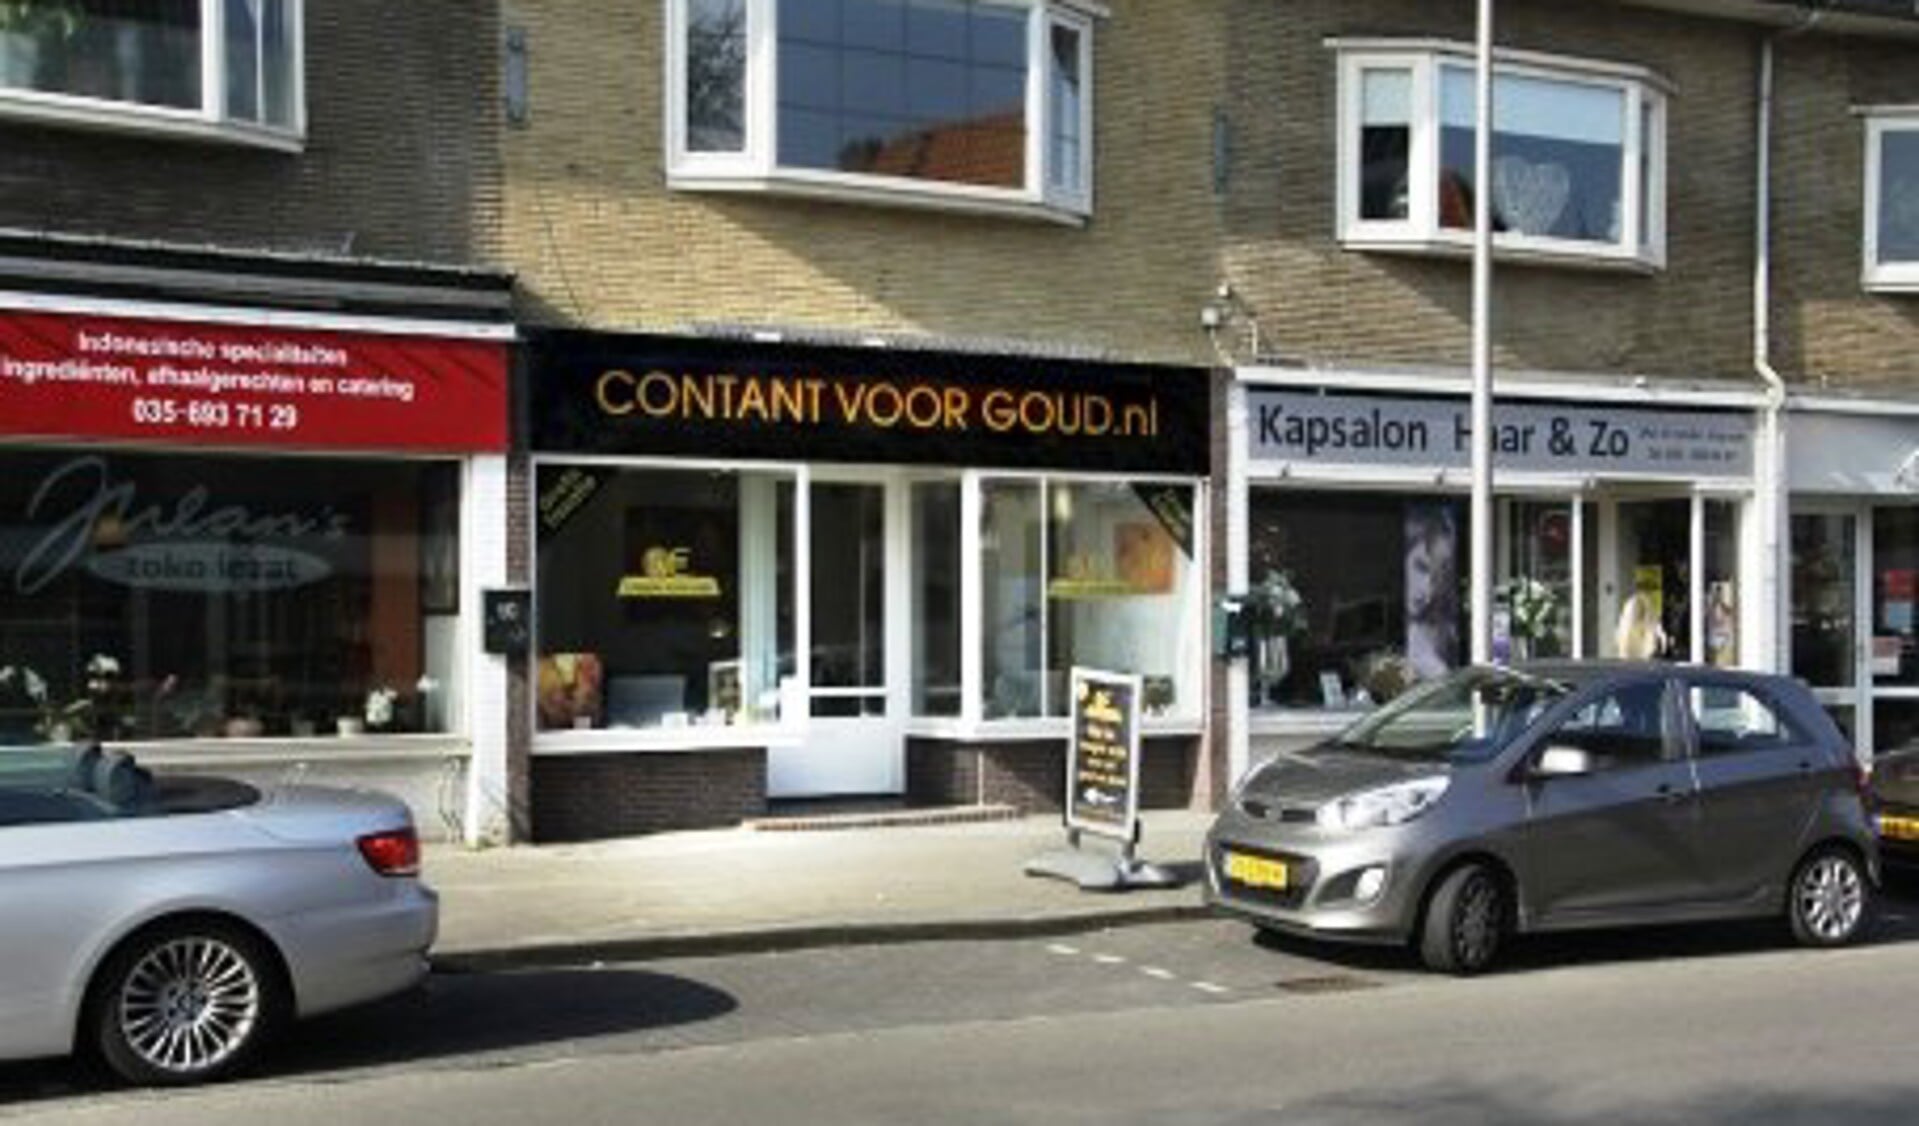 Eén van de goudopkopers, Contant voor Goud.nl aan de Laarderweg.